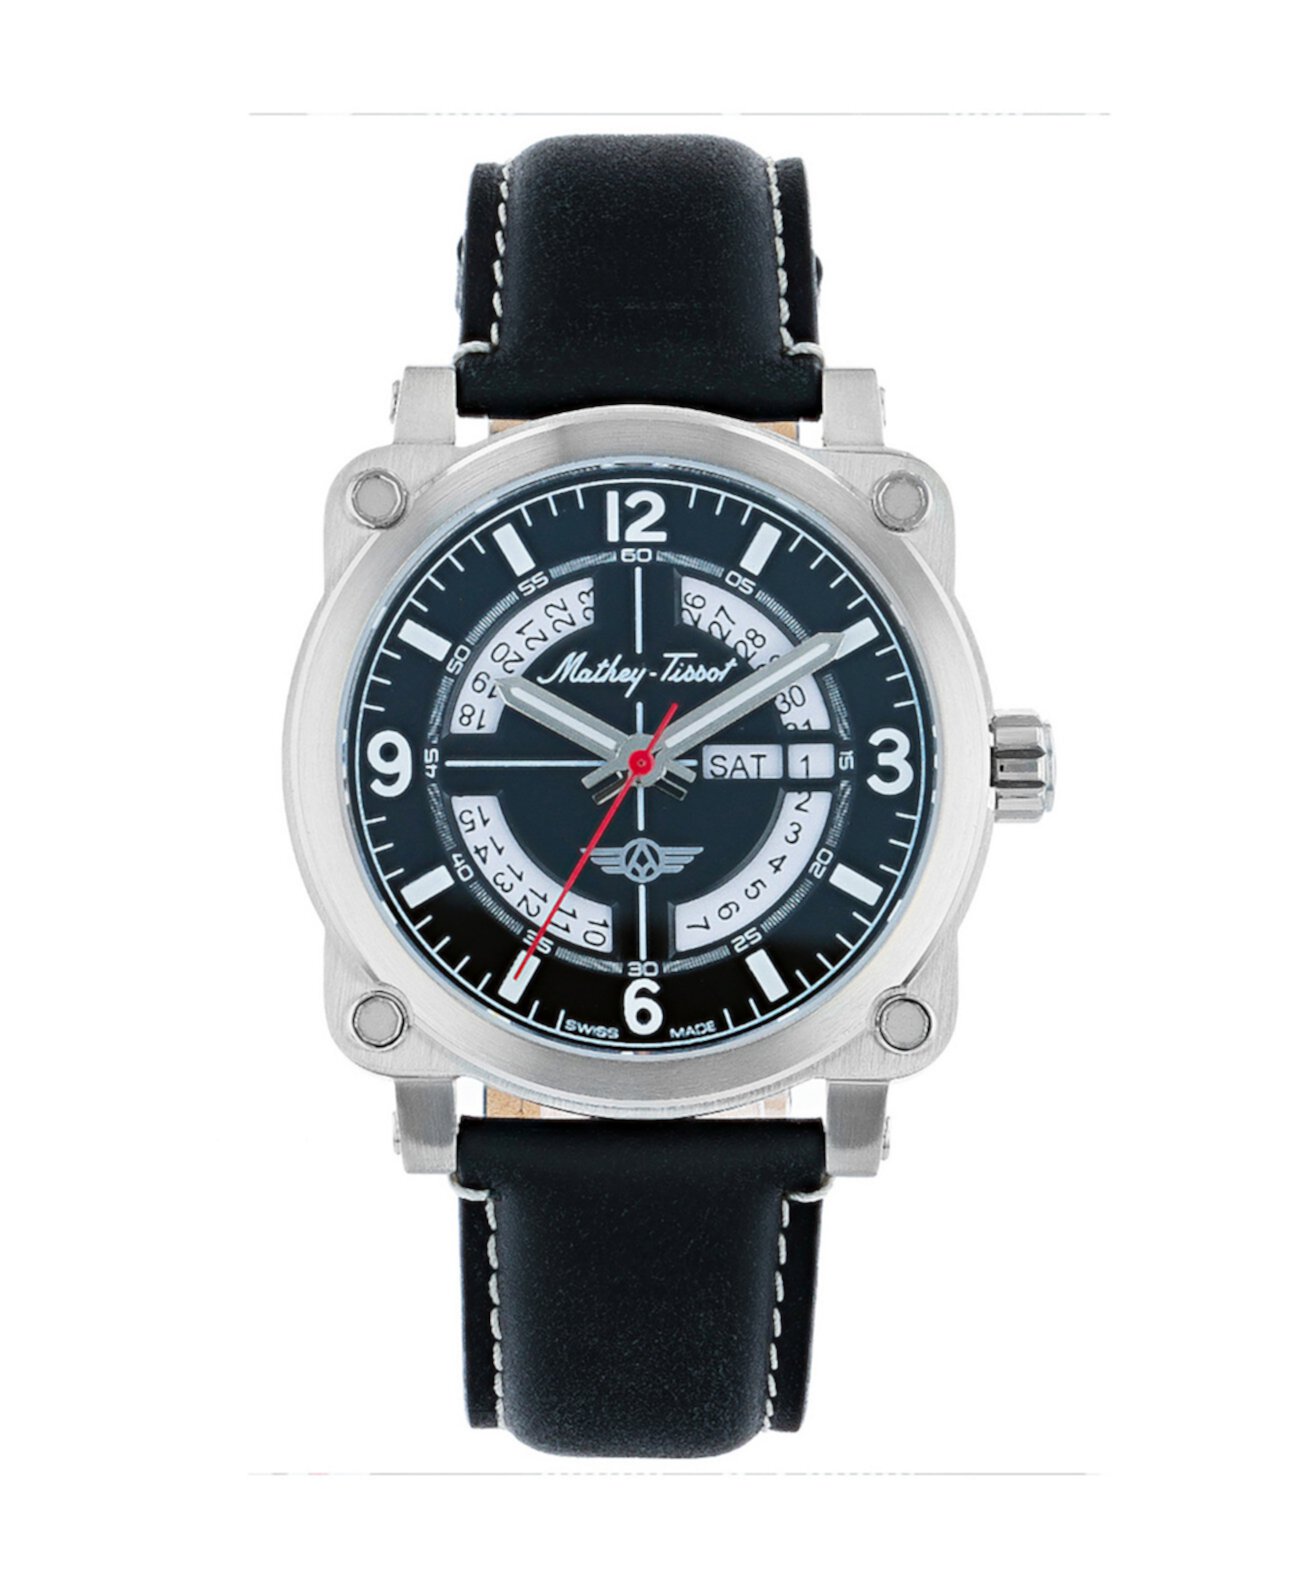 Мужские часы Pilot Collection с тремя стрелками и черным ремешком из натуральной кожи, 43 мм Mathey-Tissot